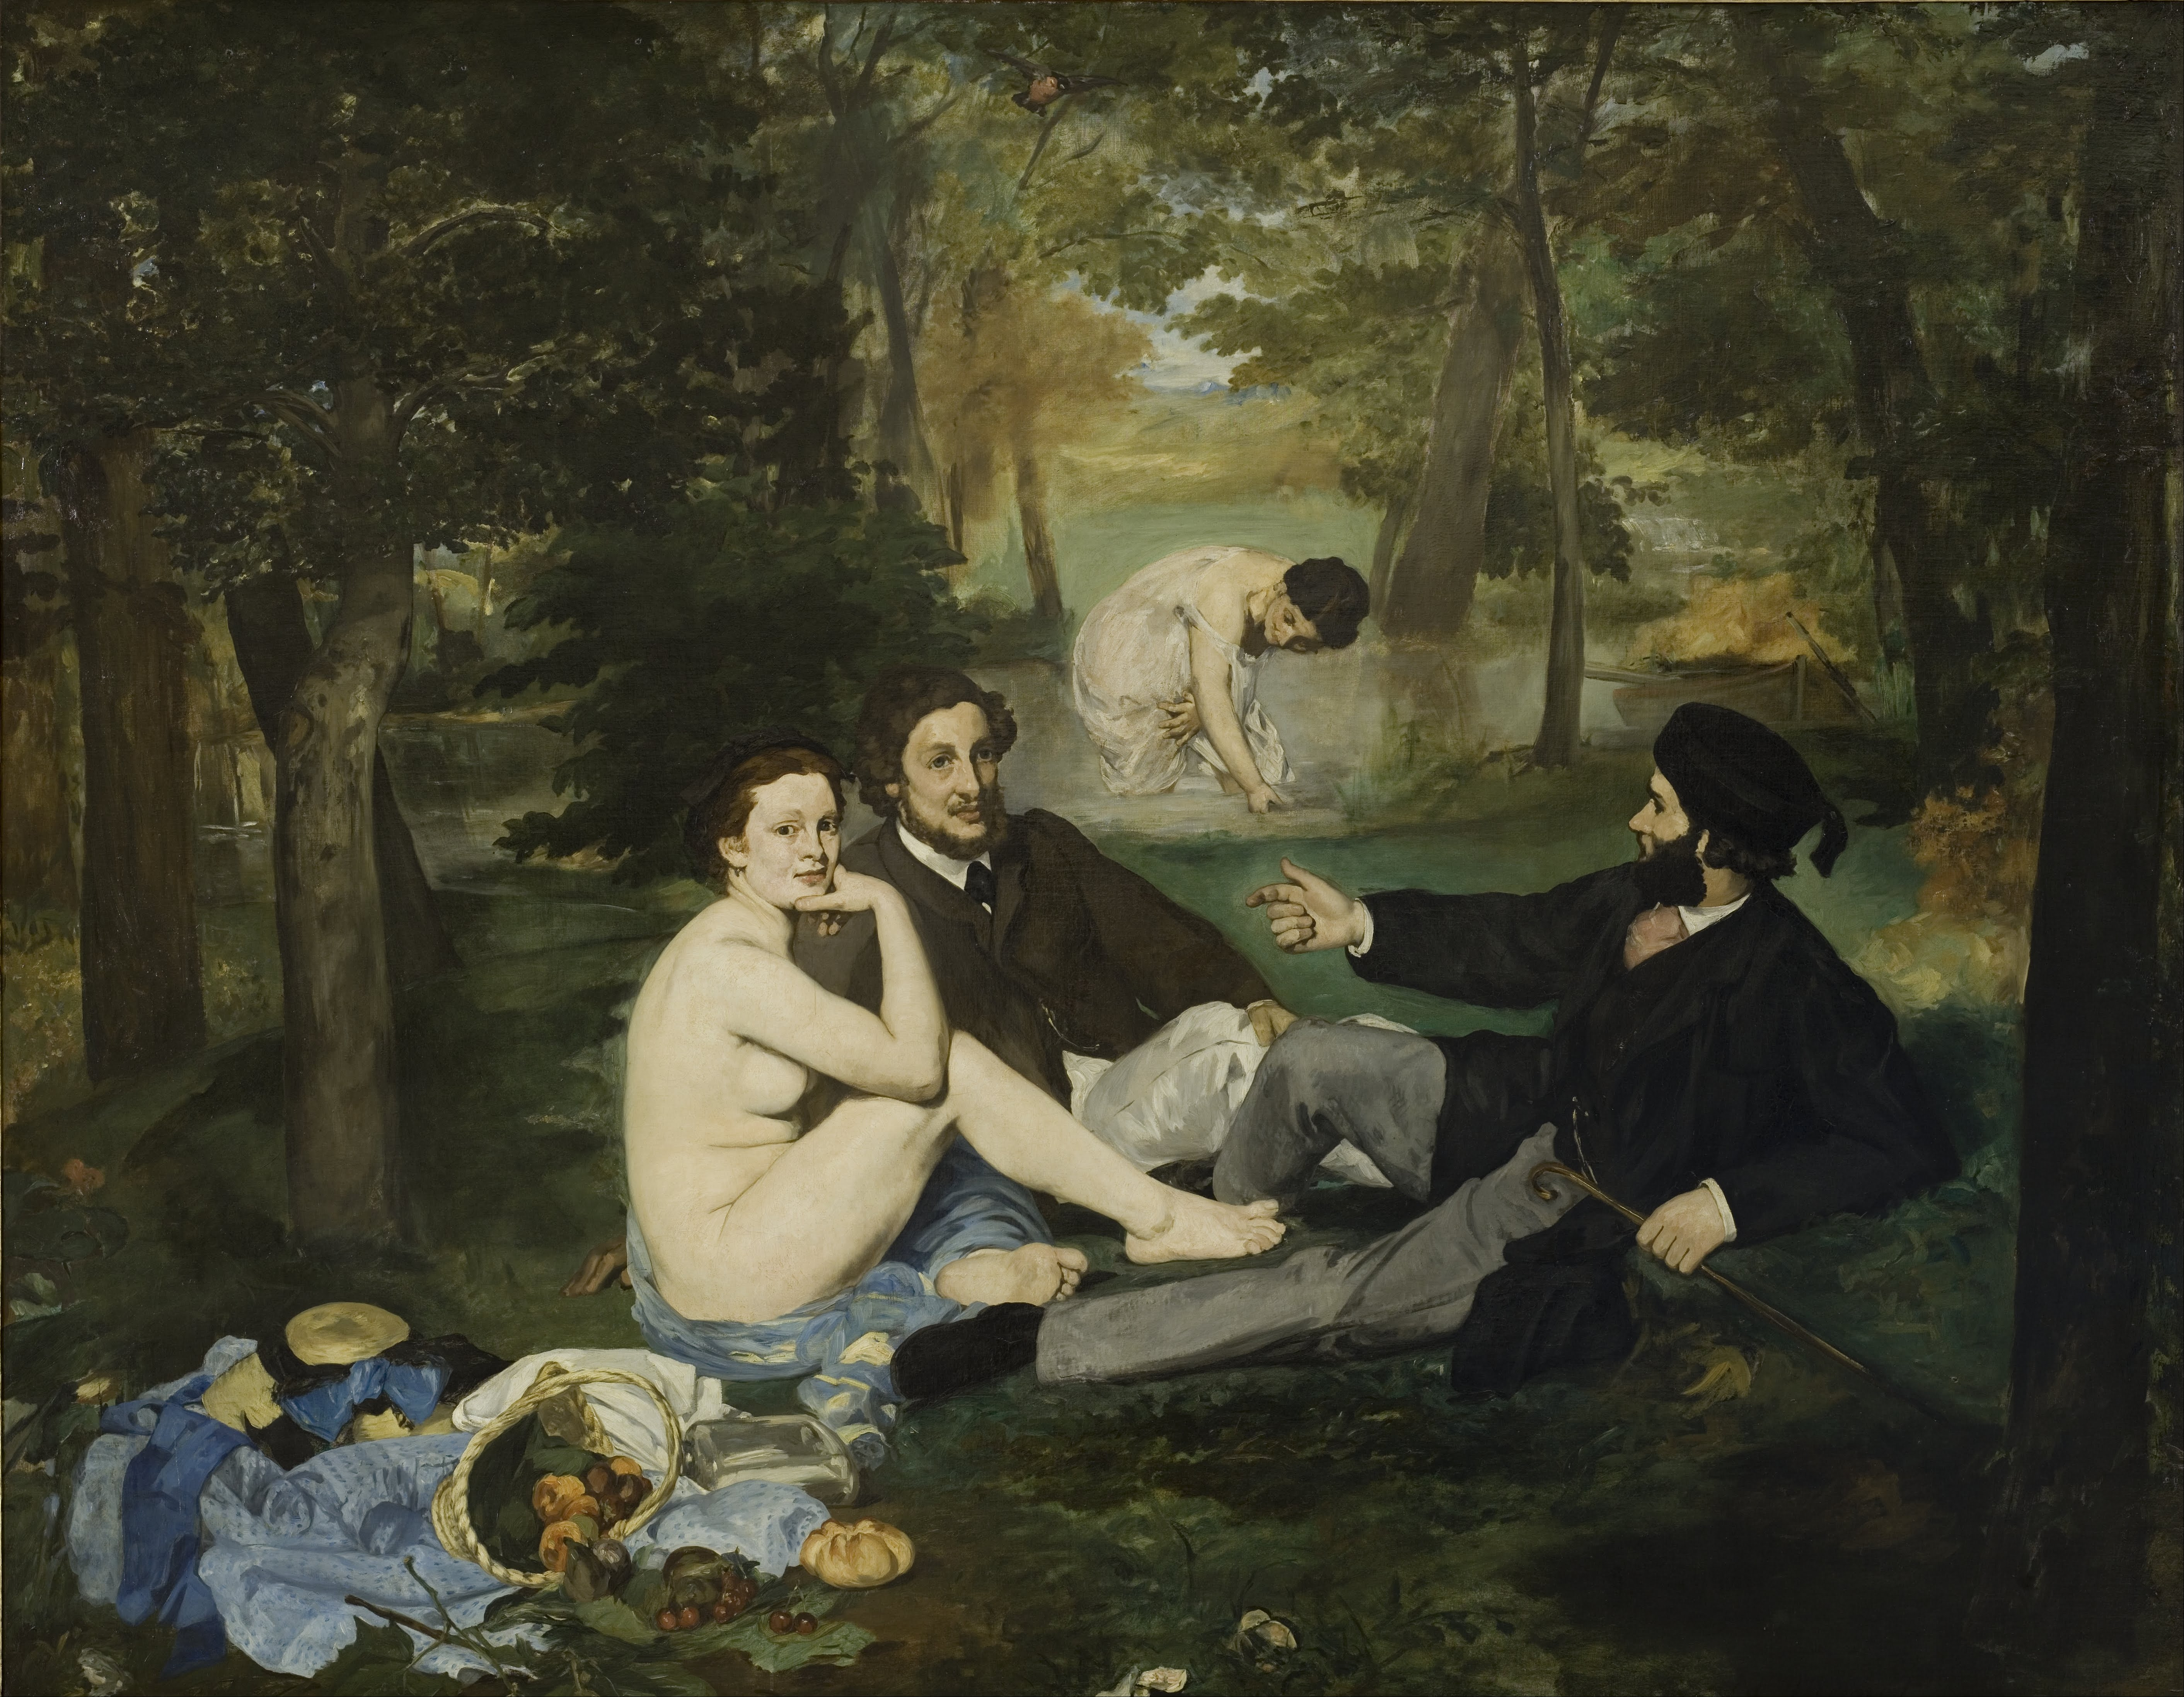 <ul><li><p>Luncheon on the Grass (1863)</p></li><li><p>part of the first Salon des Refuses in 1863</p></li><li><p>work = scandal</p><ul><li><p>women portrayed naked w/ 2 men</p></li></ul></li></ul>